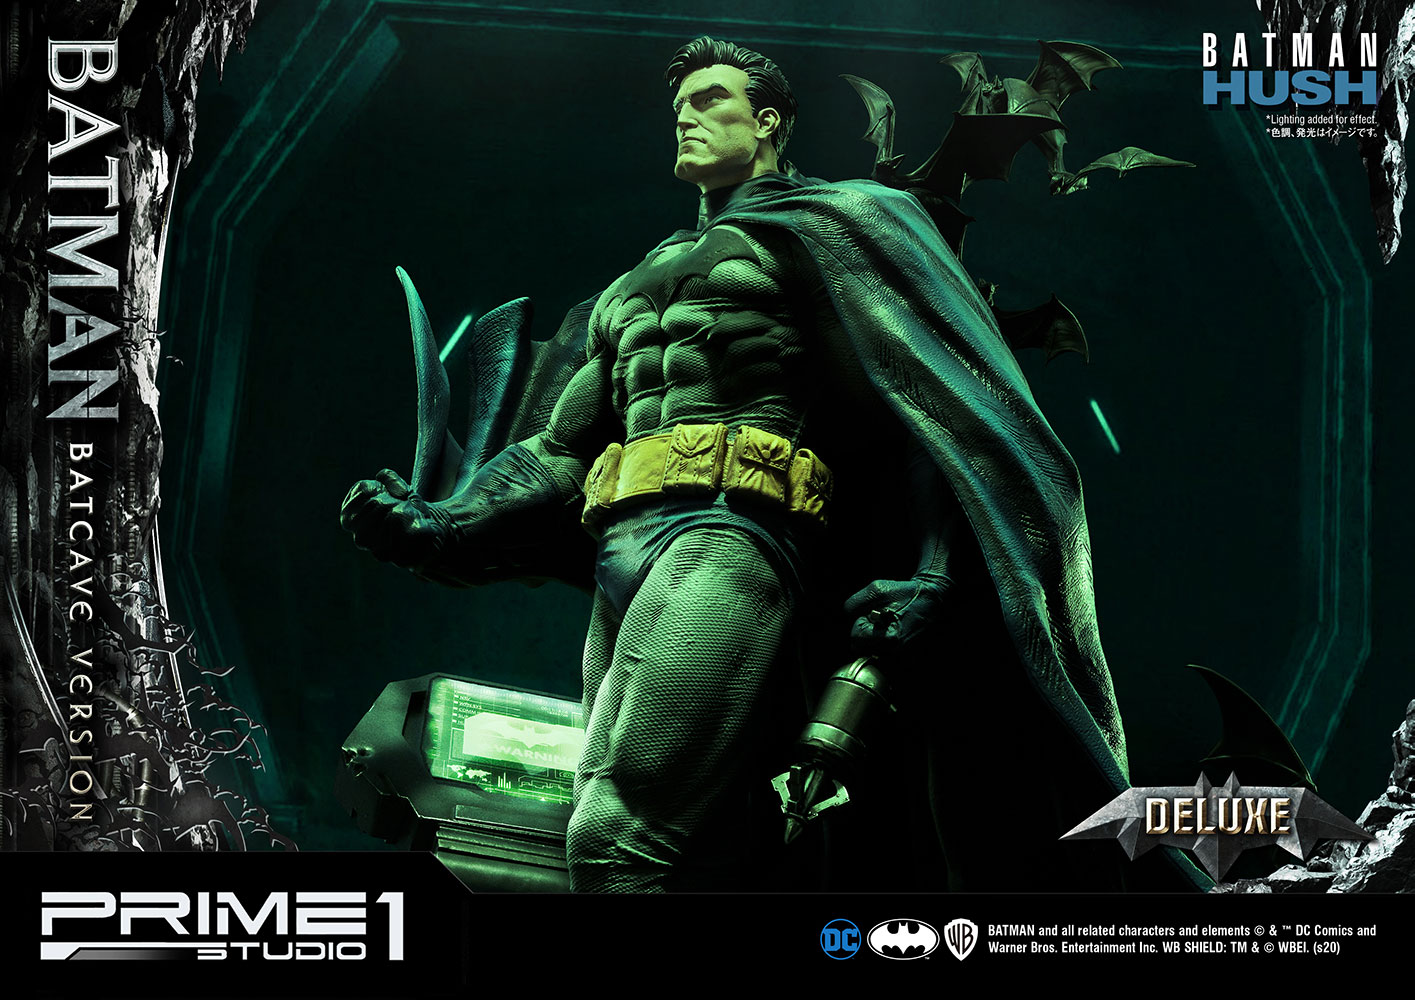 Batman Batcave Deluxe Version (Prototype Shown) View 5